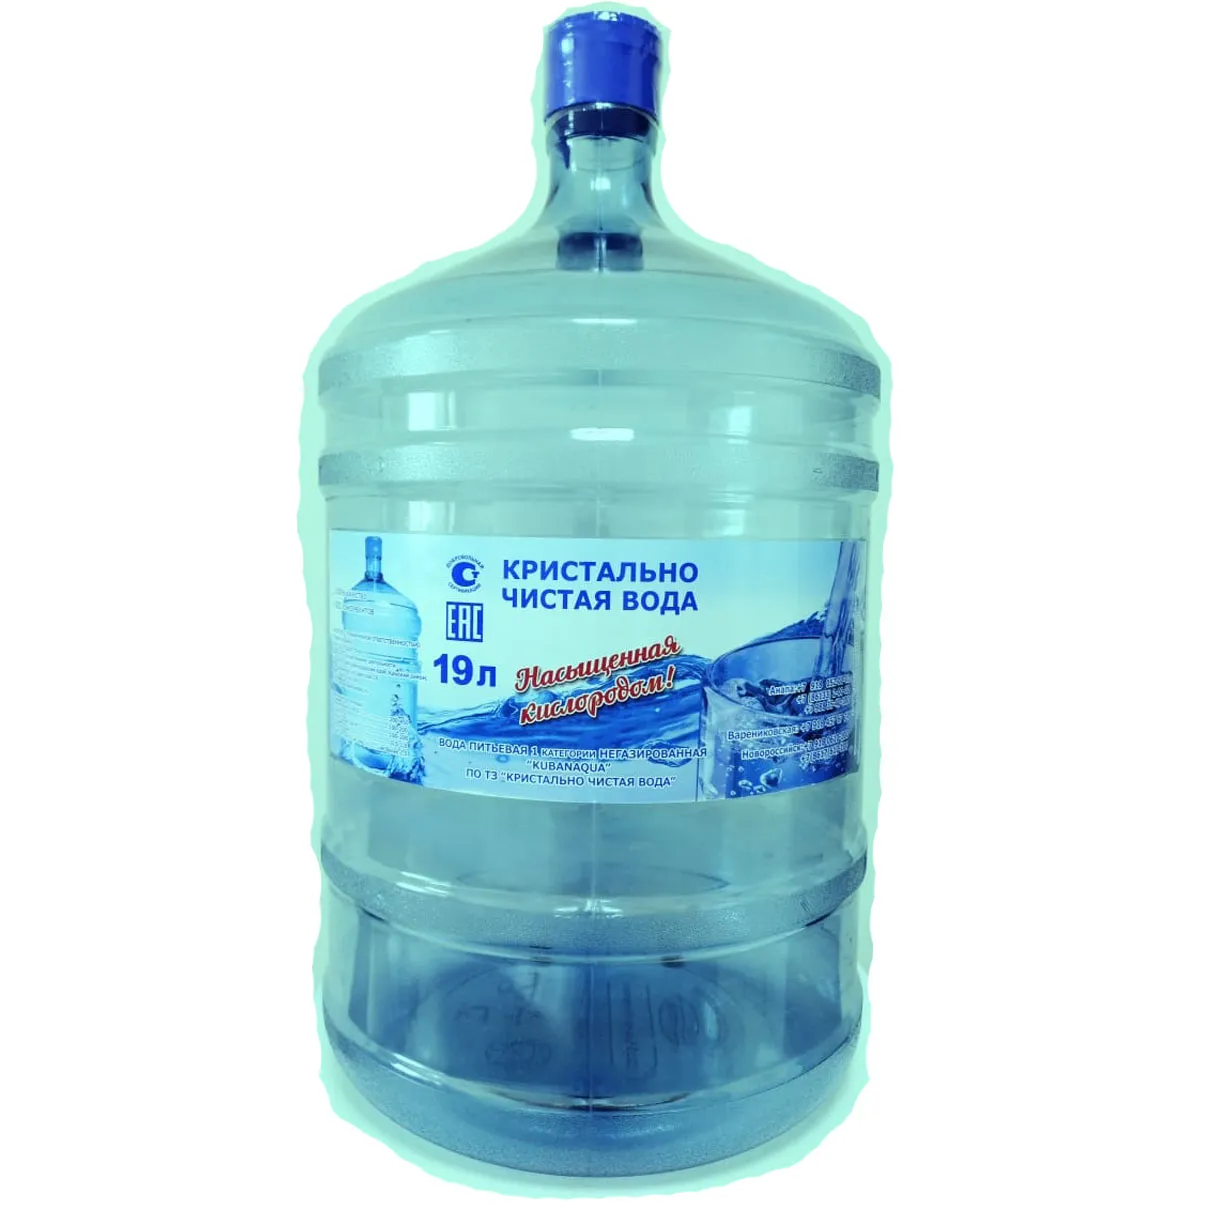 Заказать доставку воды ростов. Вода в бутылях. Бутилированной воды. Чистая вода. Чистая вода в бутылях.